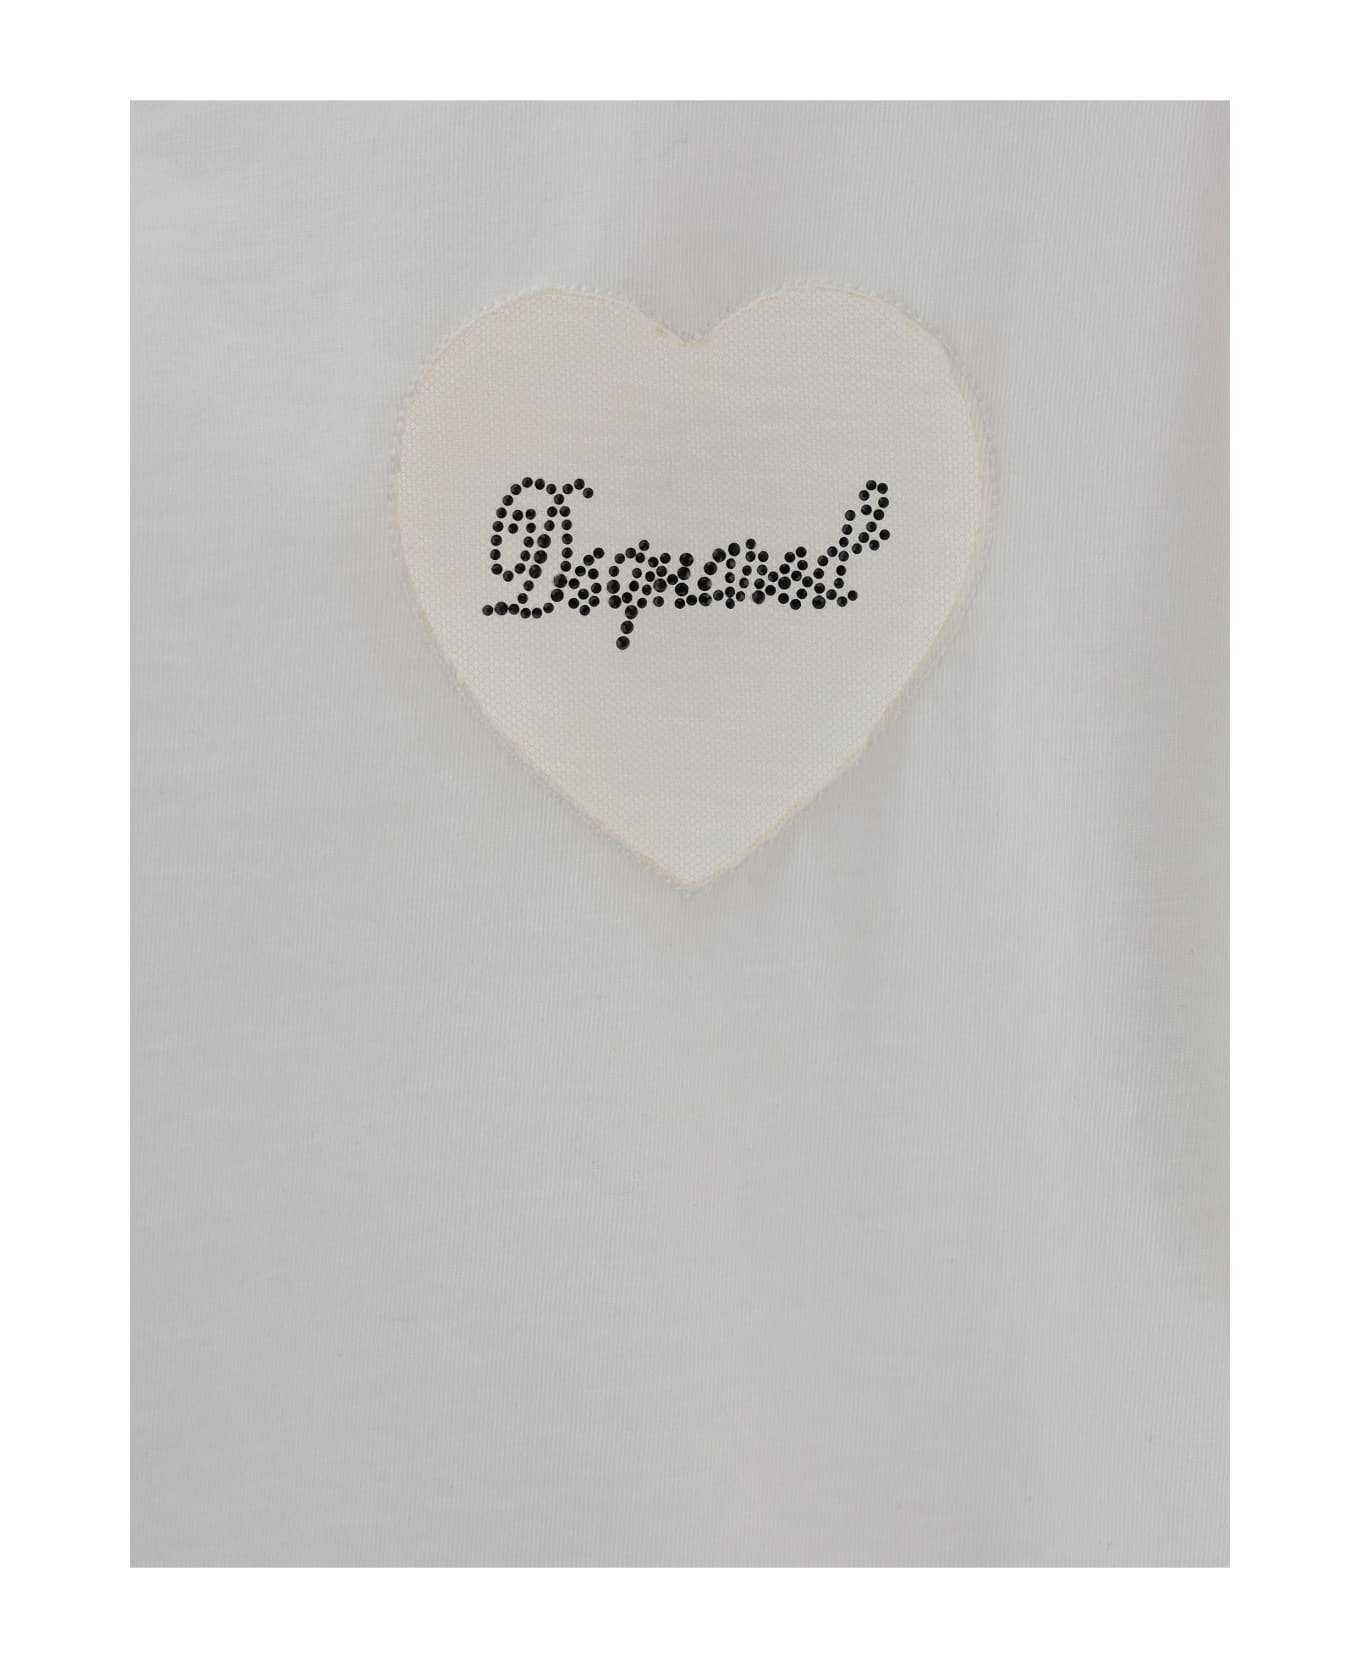 Dsquared2 Boxi Fit T-shirt - 100